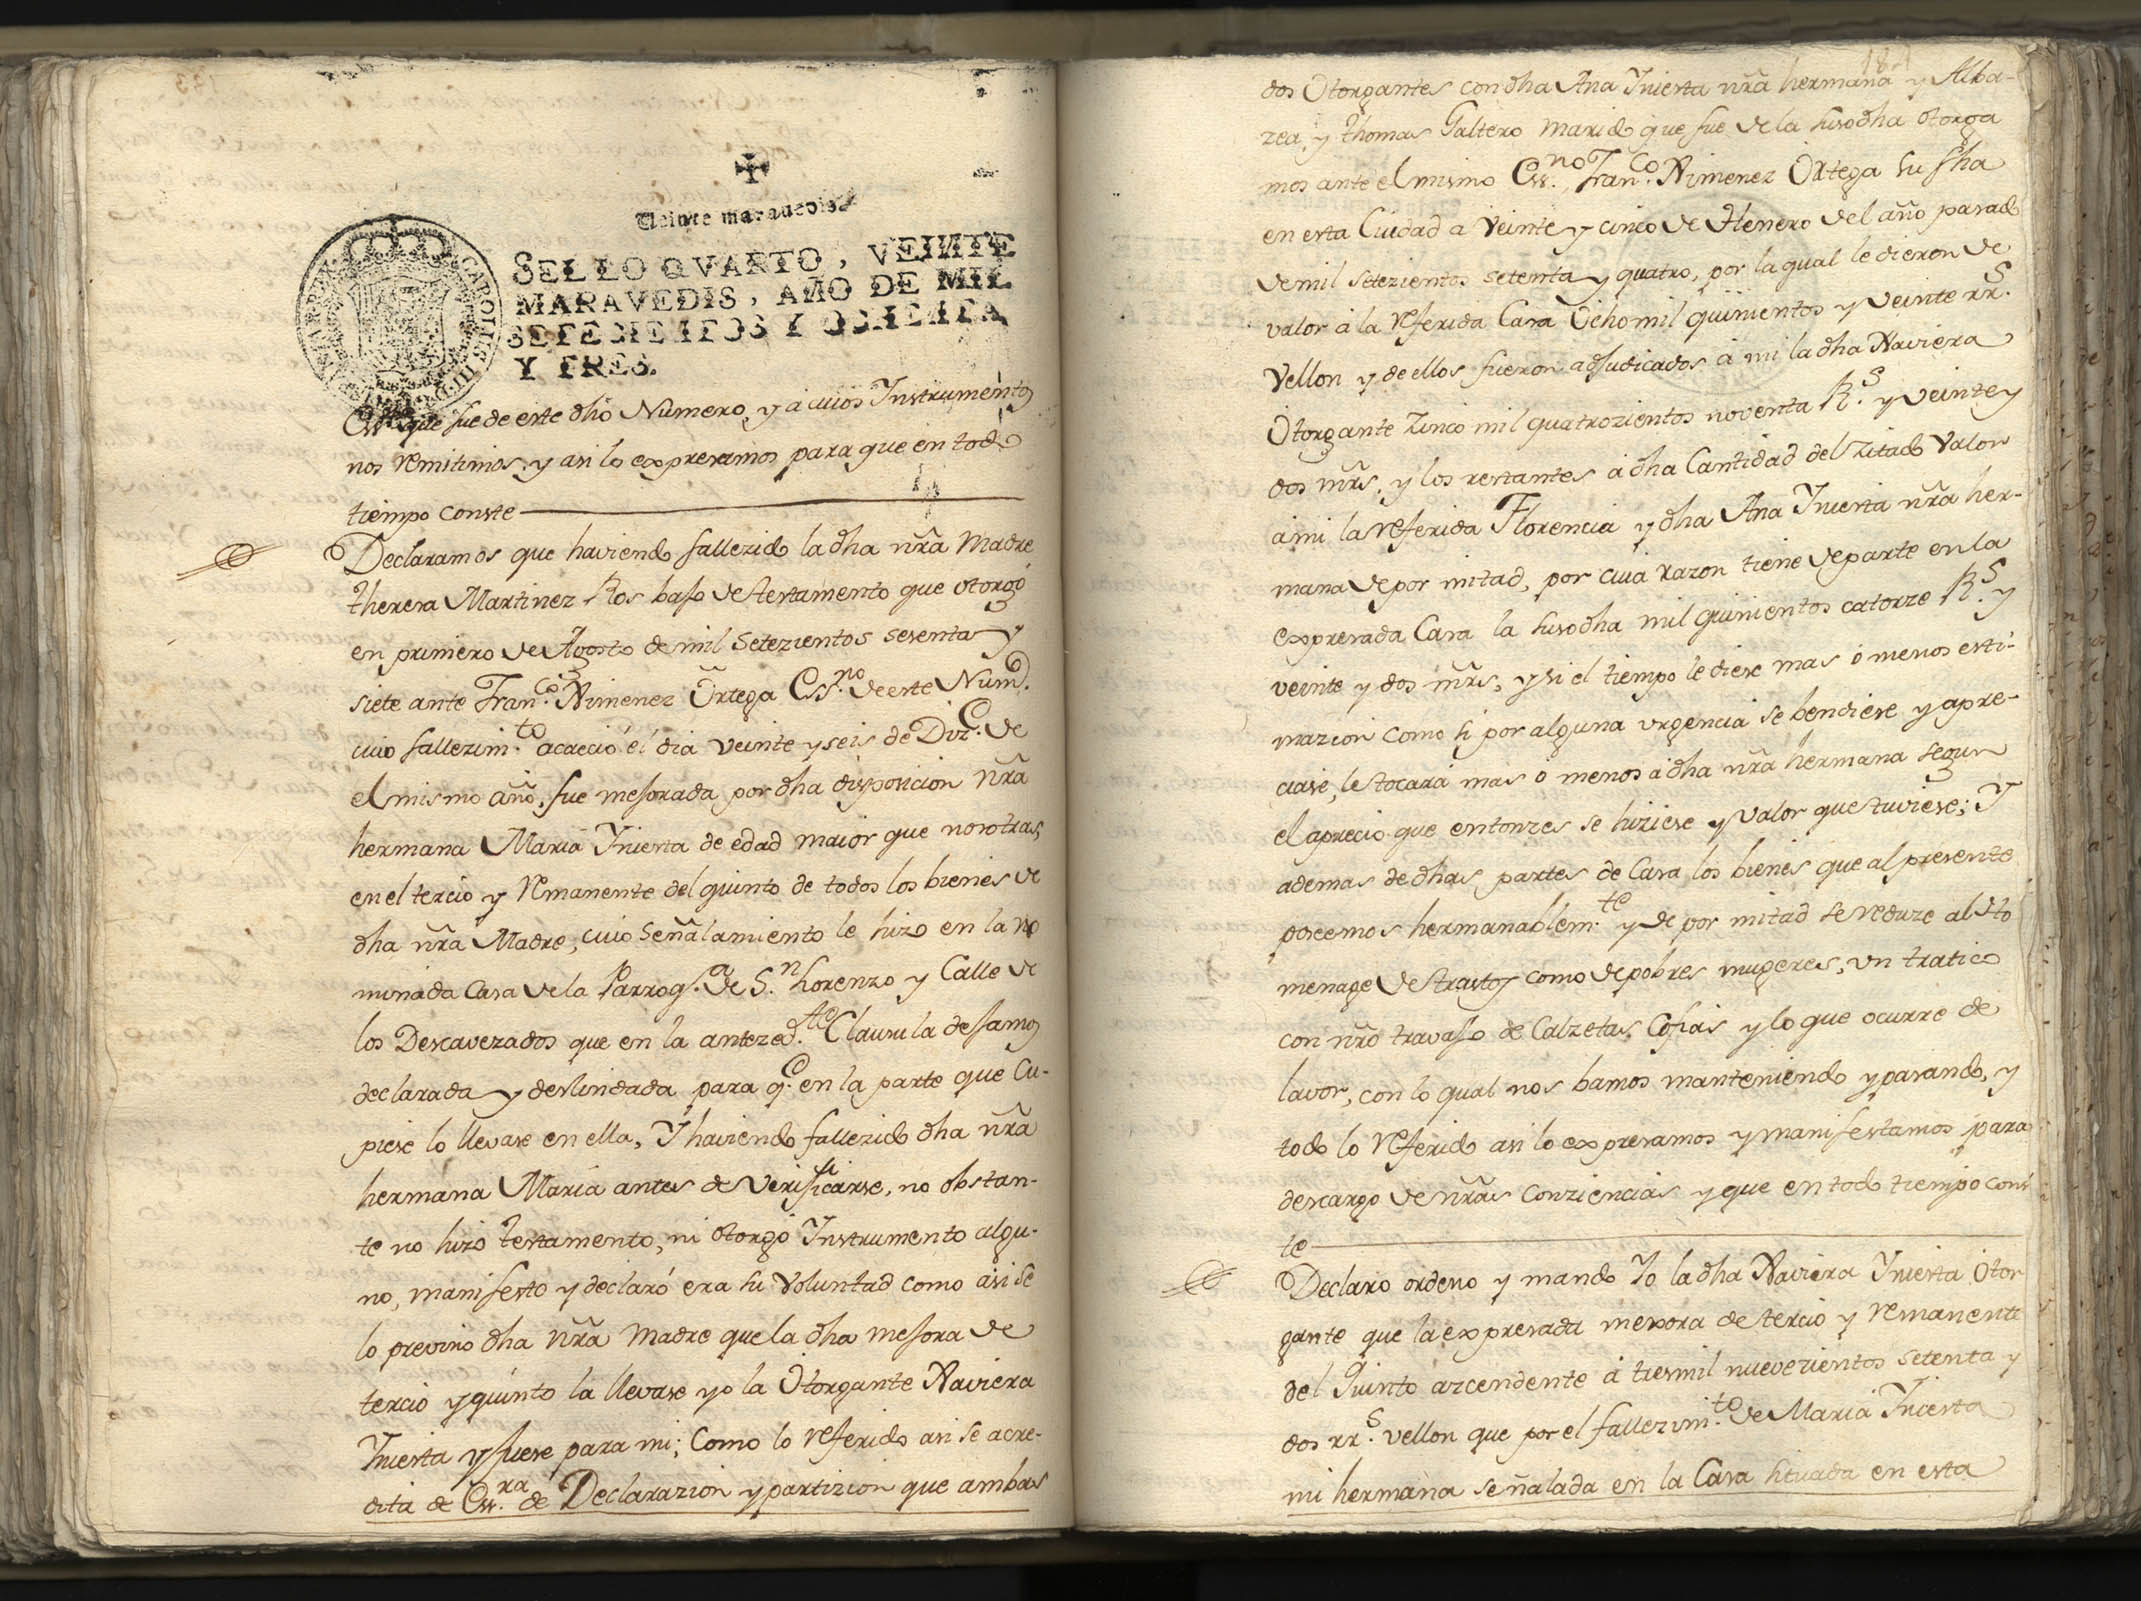 Registro de Juan Mateo Atienza, Murcia: T. 1 de enero a agosto de 1783.